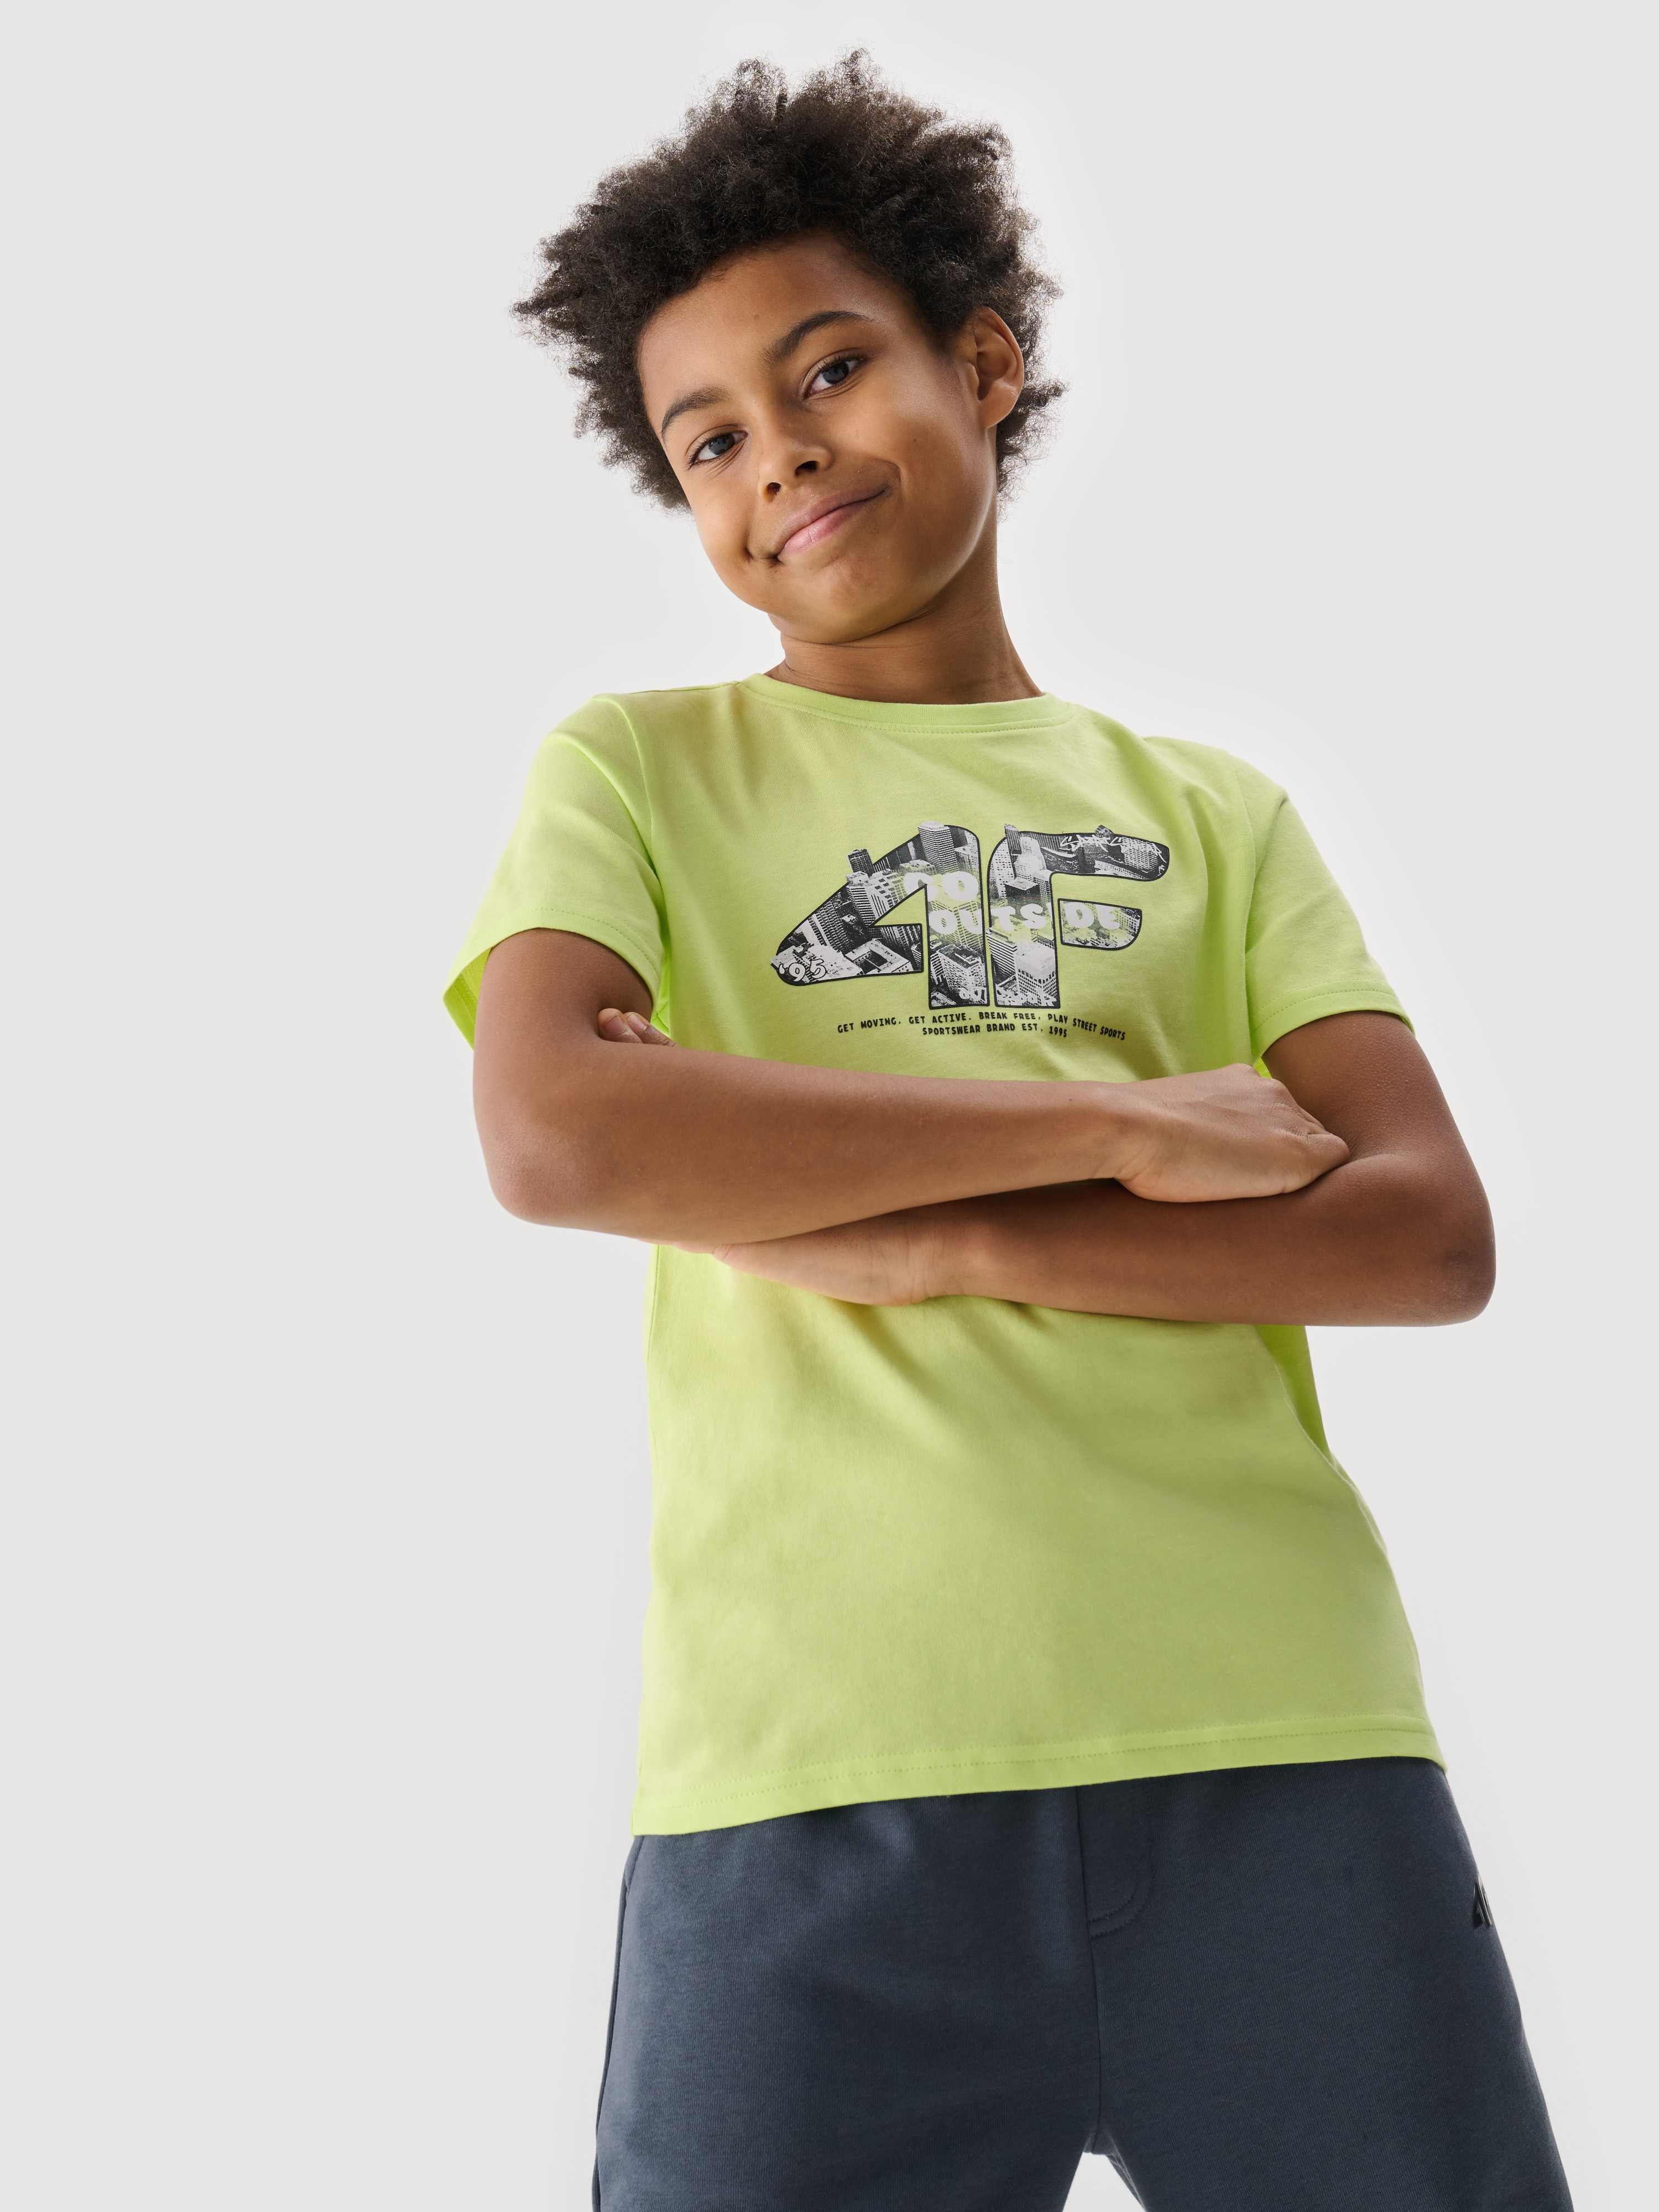 Chlapecké tričko s potiskem - zelené